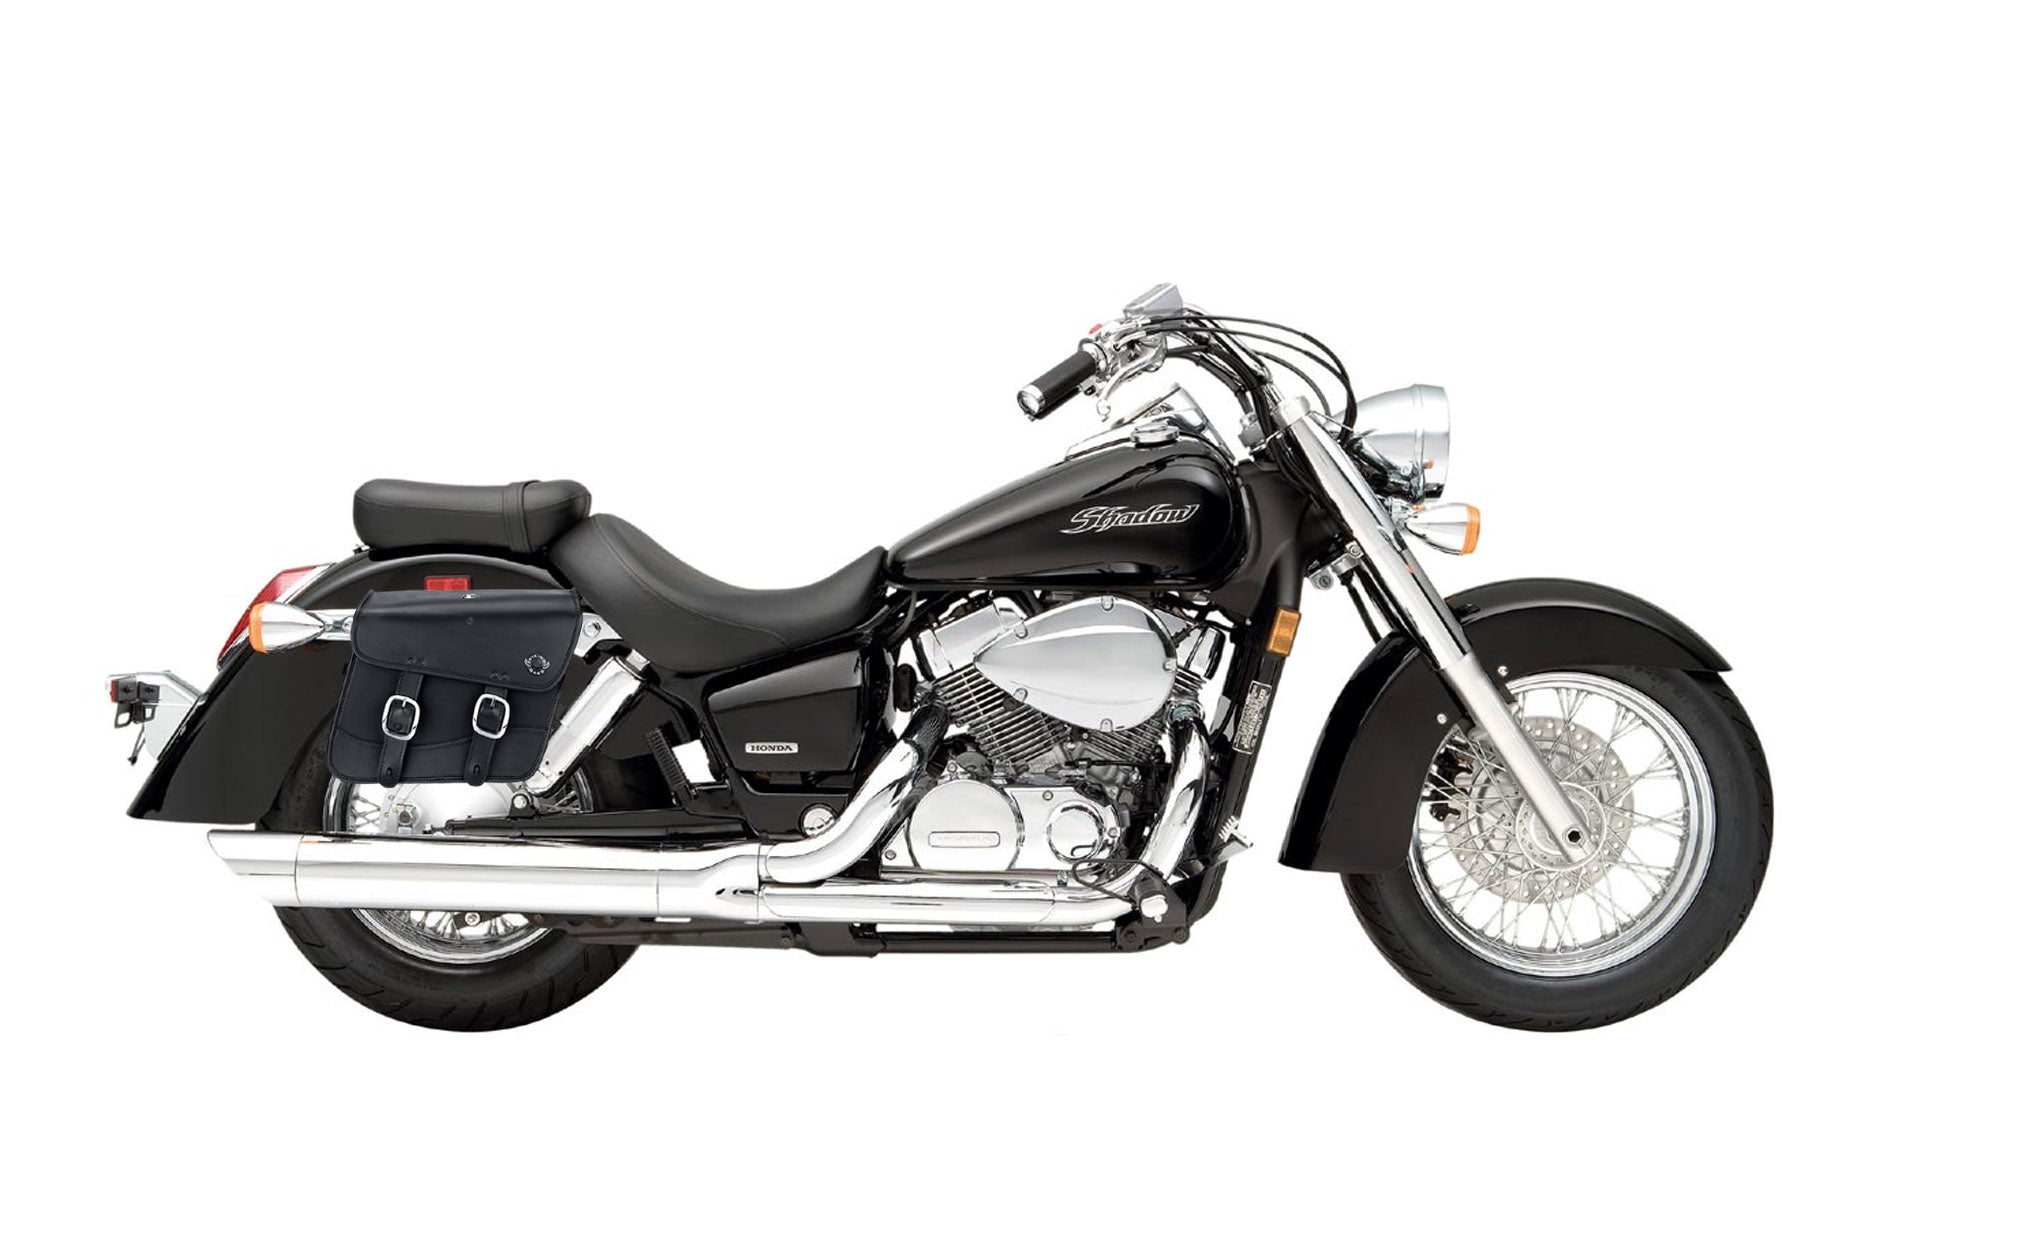 Viking Thor Medium Honda Shadow 750 Aero Leather Motorcycle Saddlebags on Bike Photo @expand